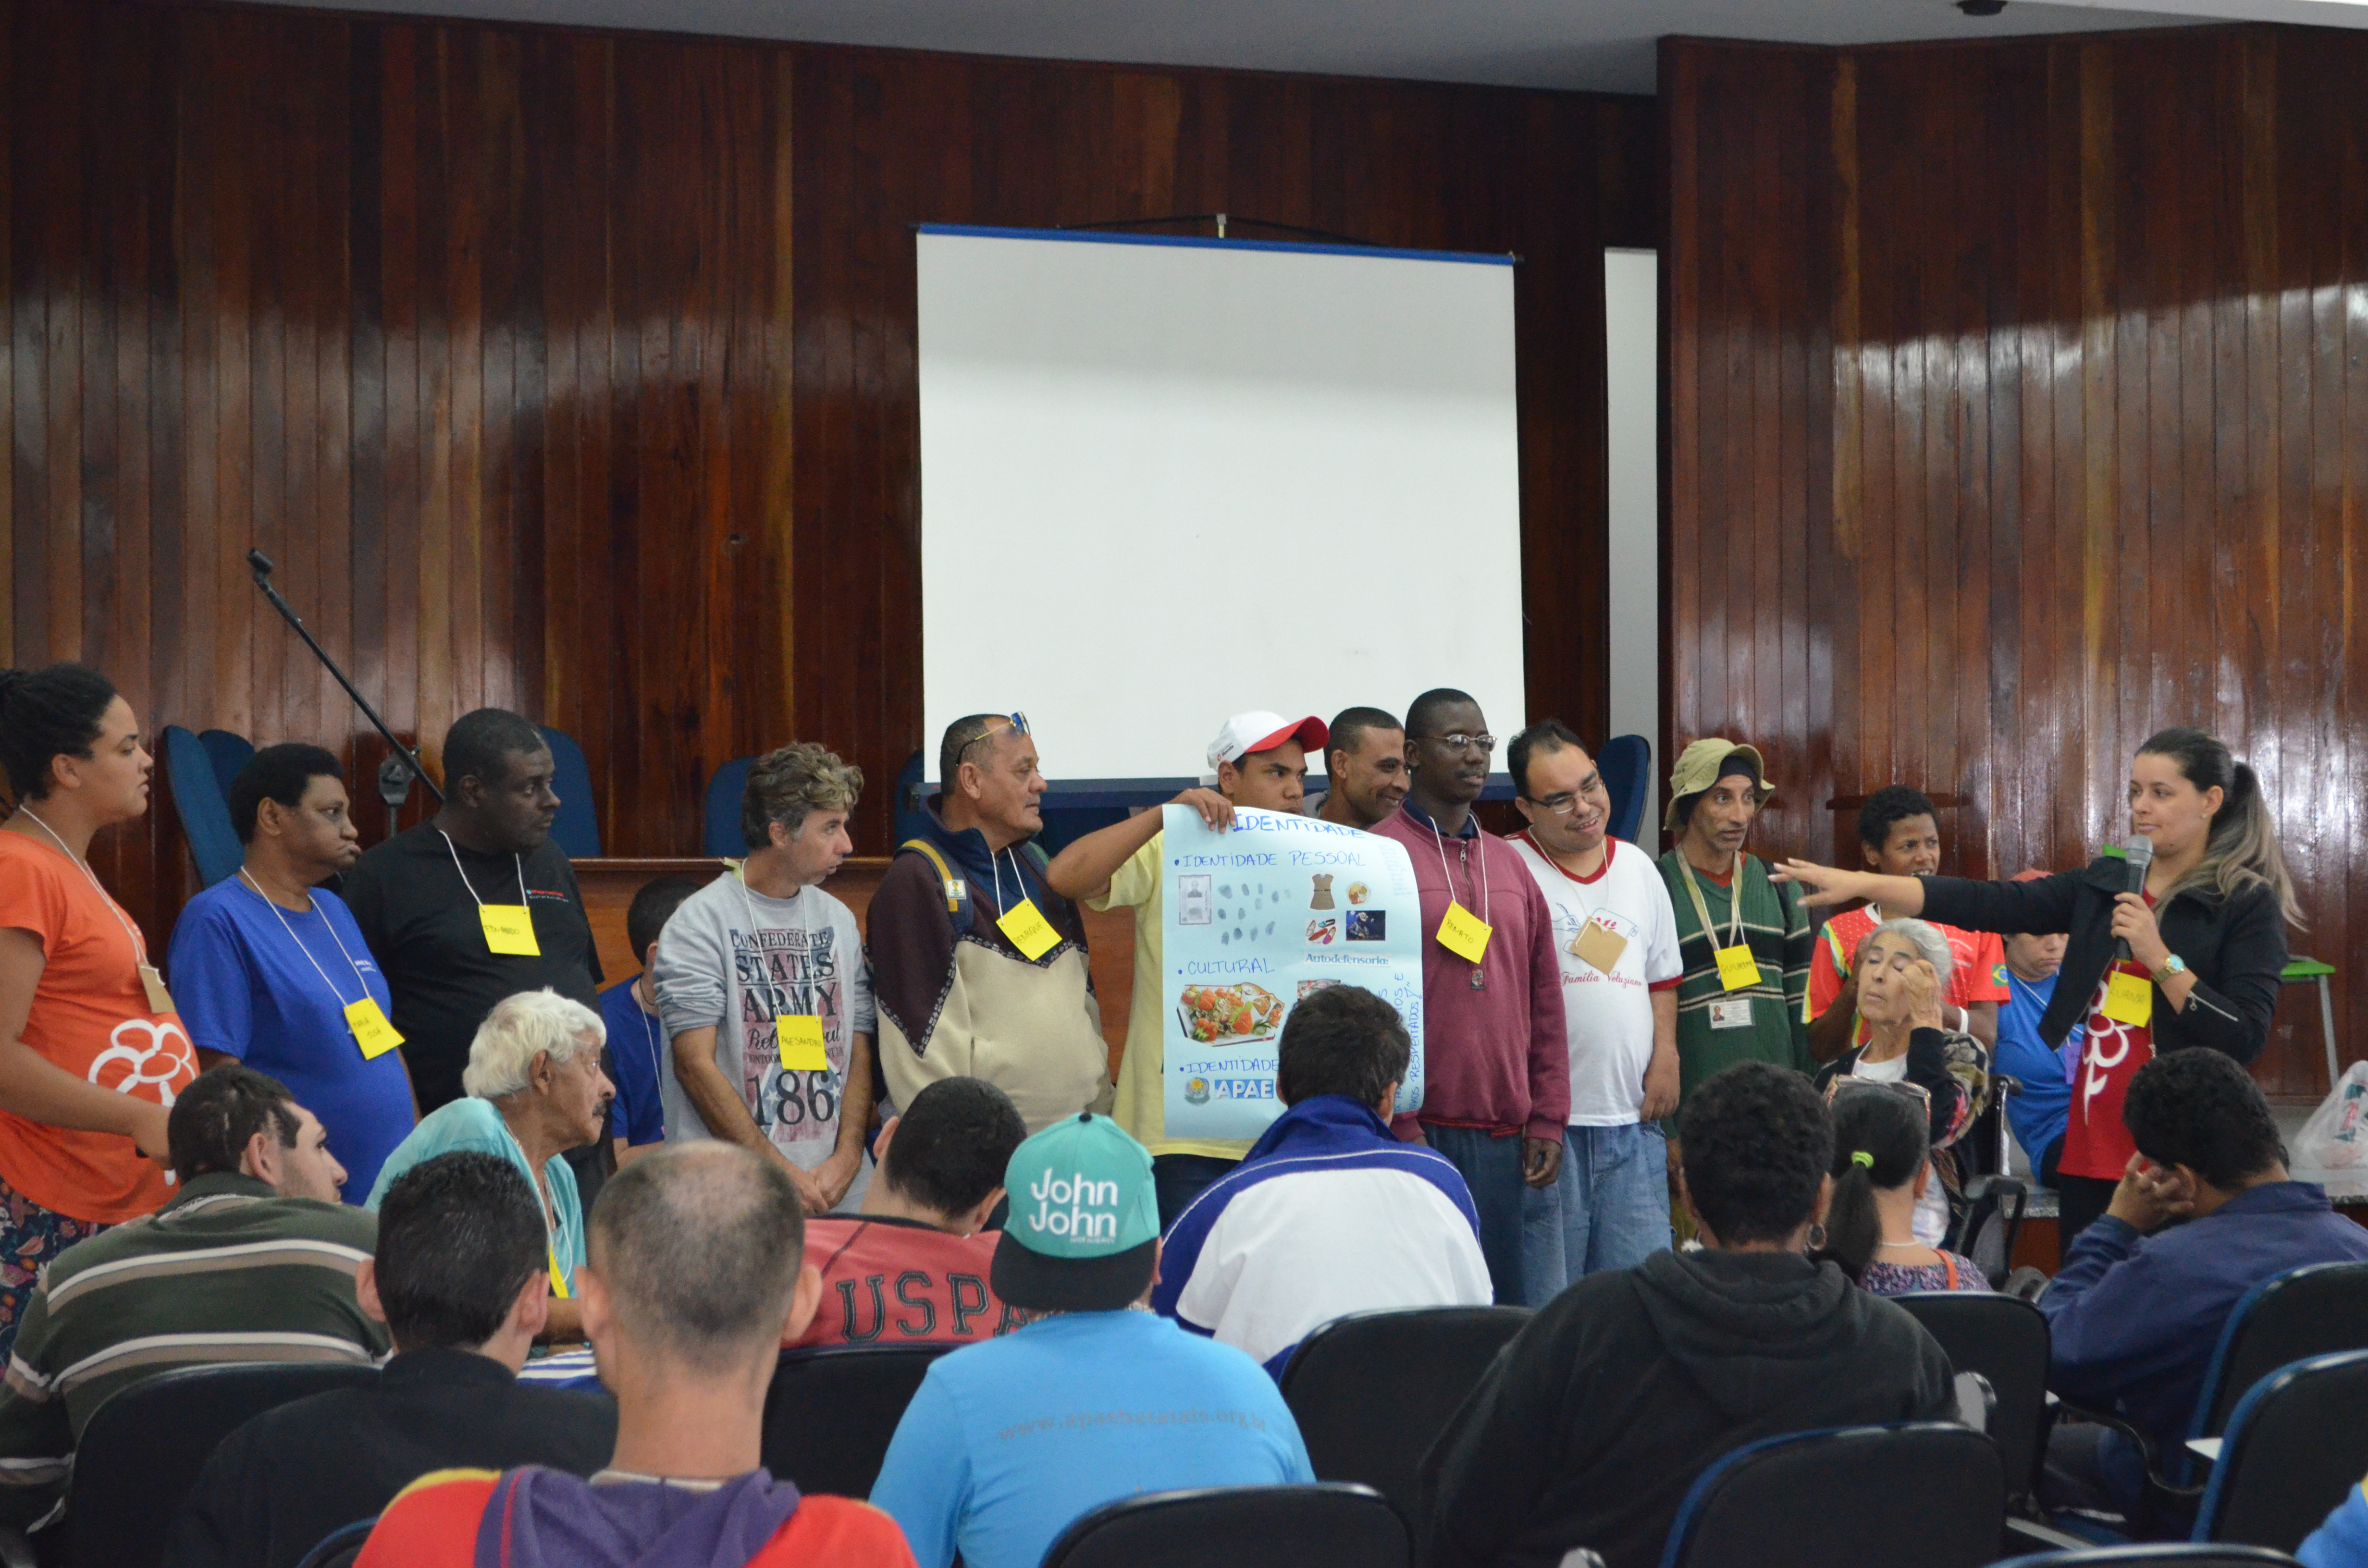 Participantes apresentam opiniões sobre os temas ligados aos seus direitos (Foto: Reprodução)